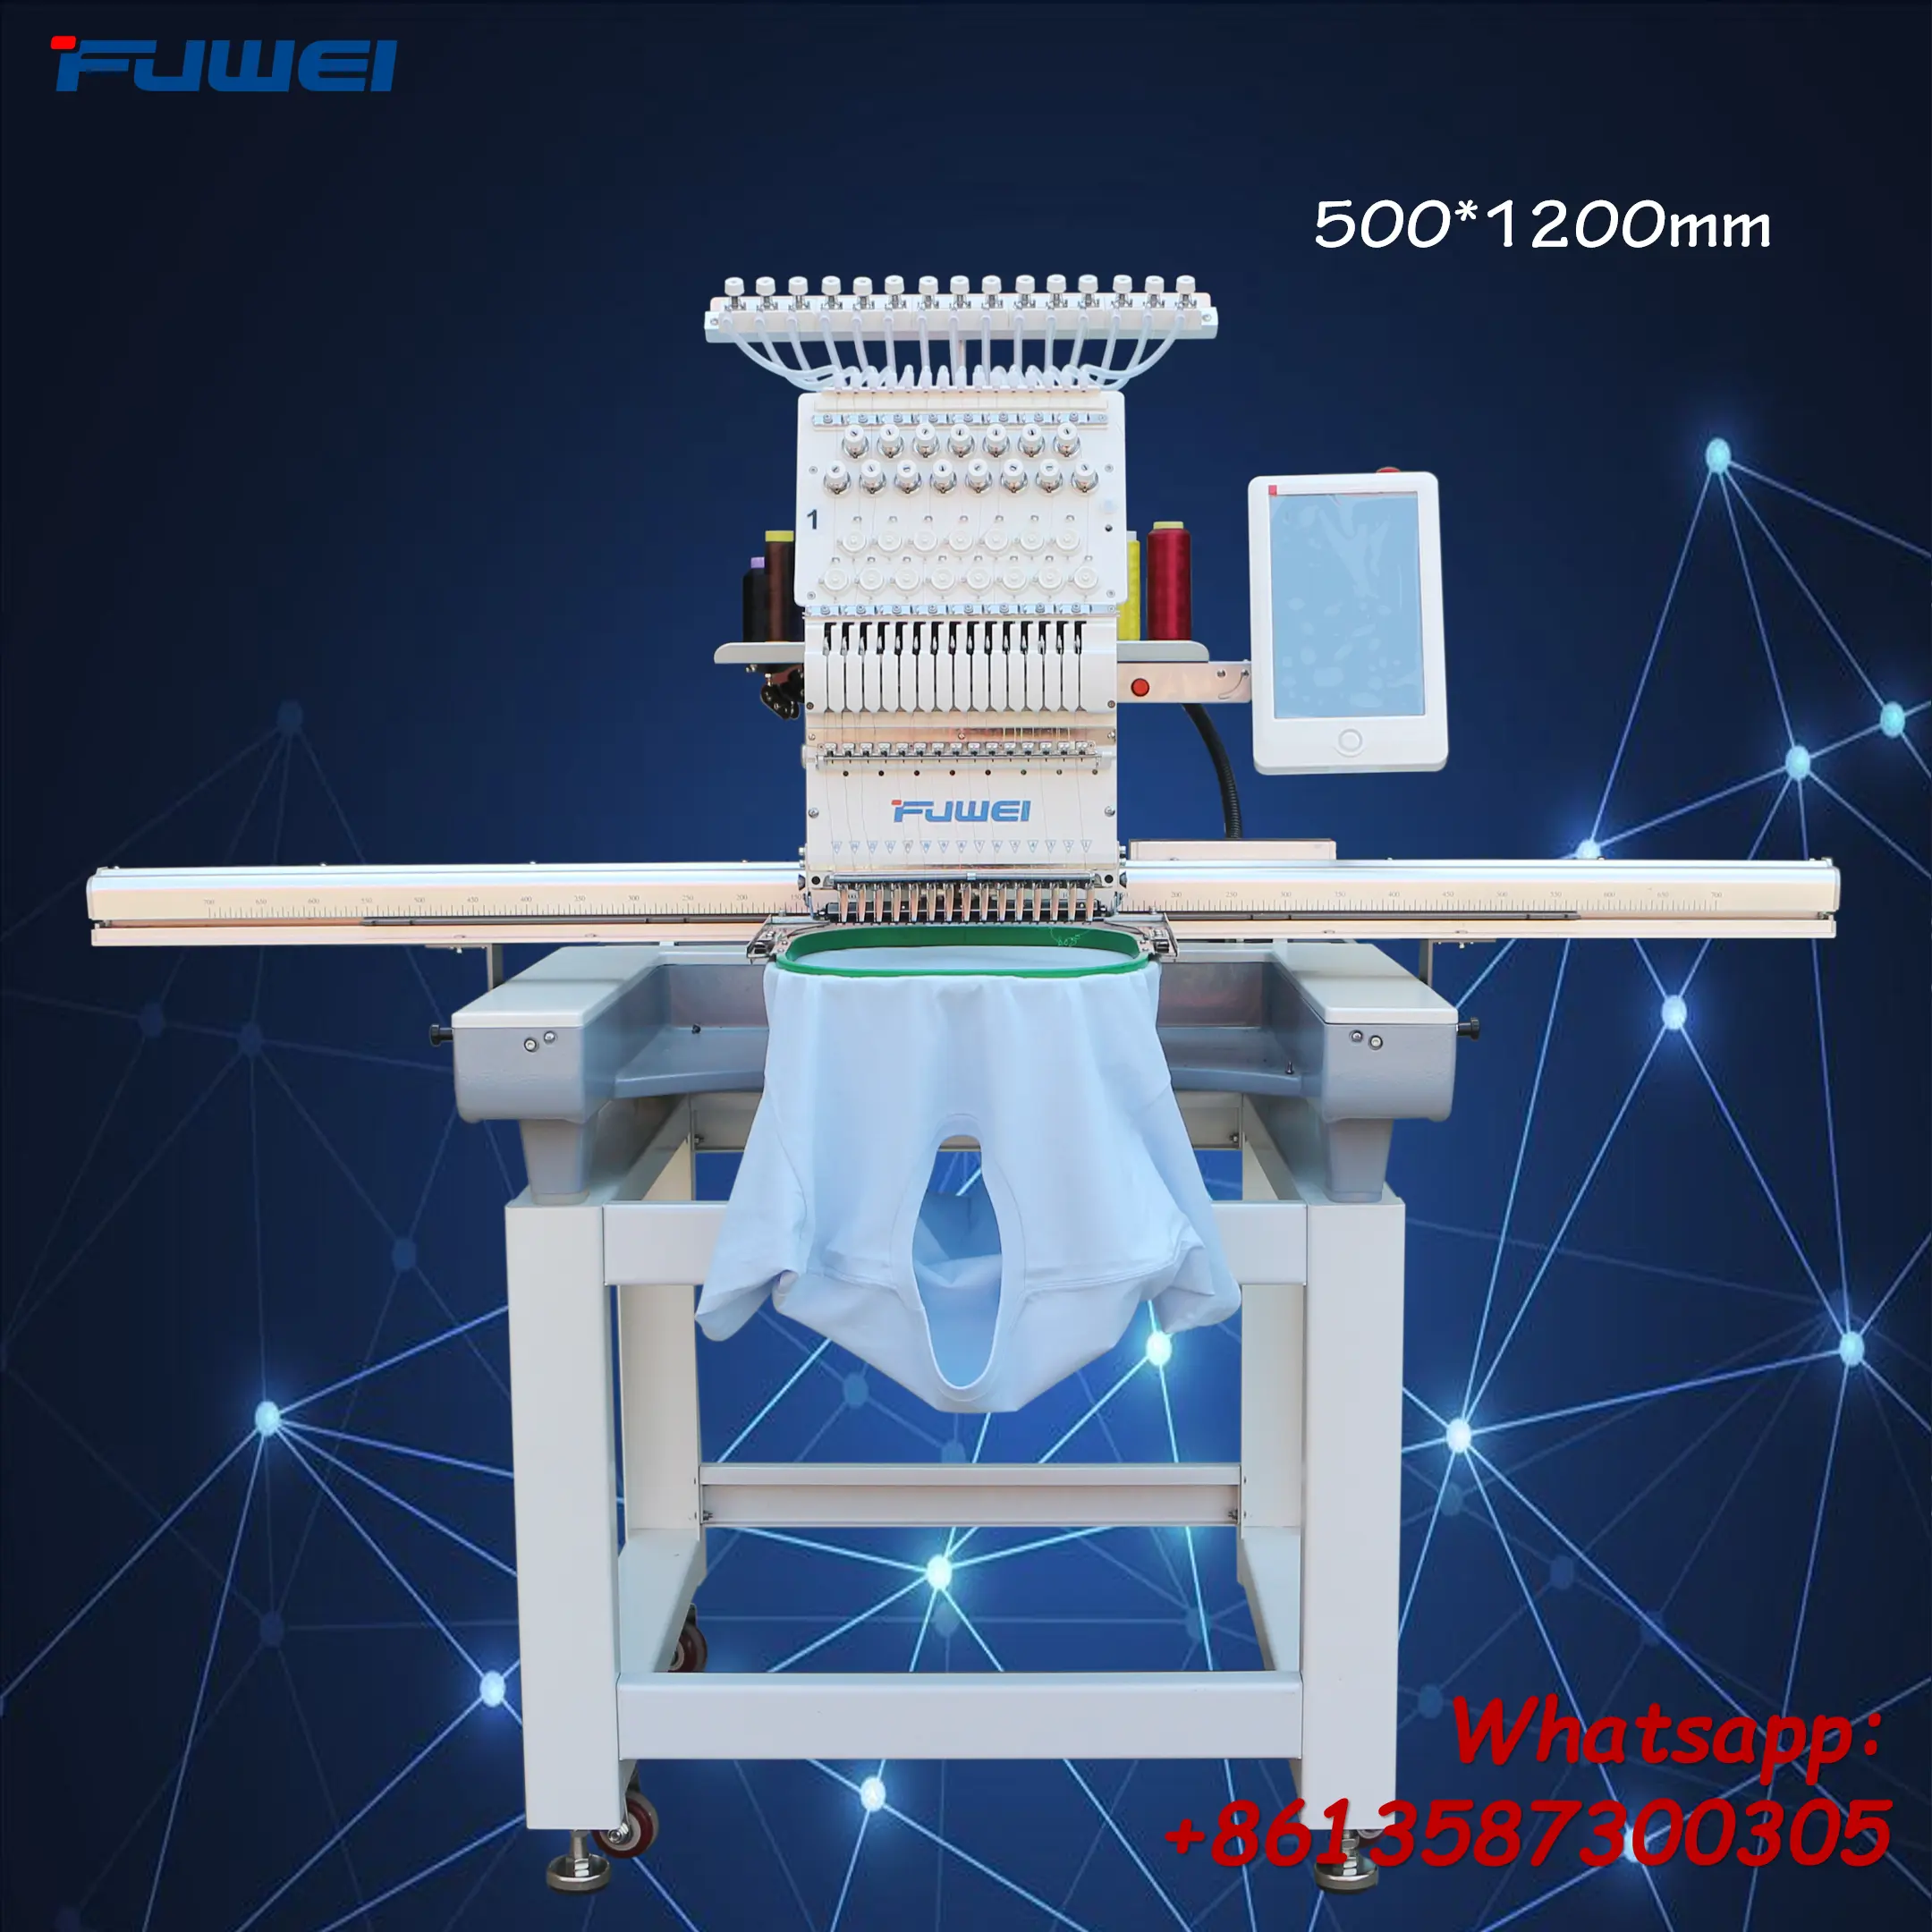 Xingyue maior área uma cabeça plana máquina de bordado com o melhor preço de fábrica igual à marca fuwei